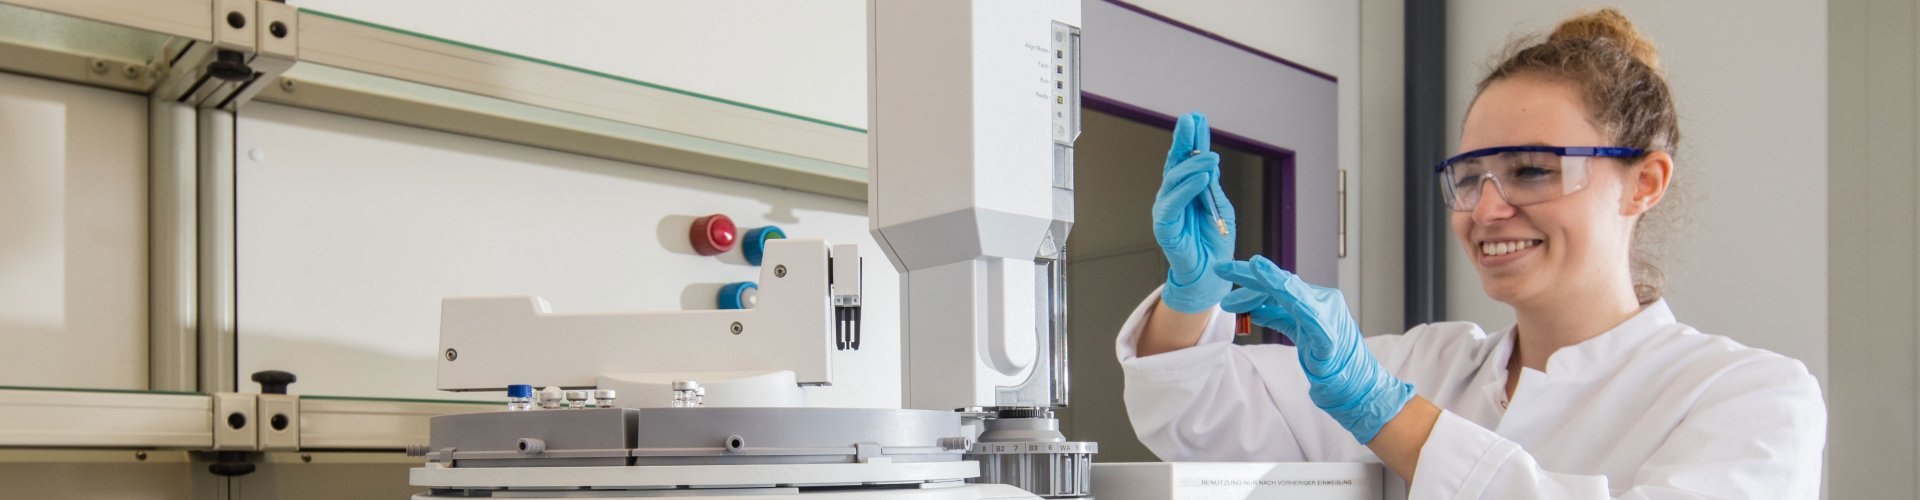 Studierende in Laborkittel hält eine Pipette in den Händen. Vor ihr ist Laboraapartur zu erkennen.